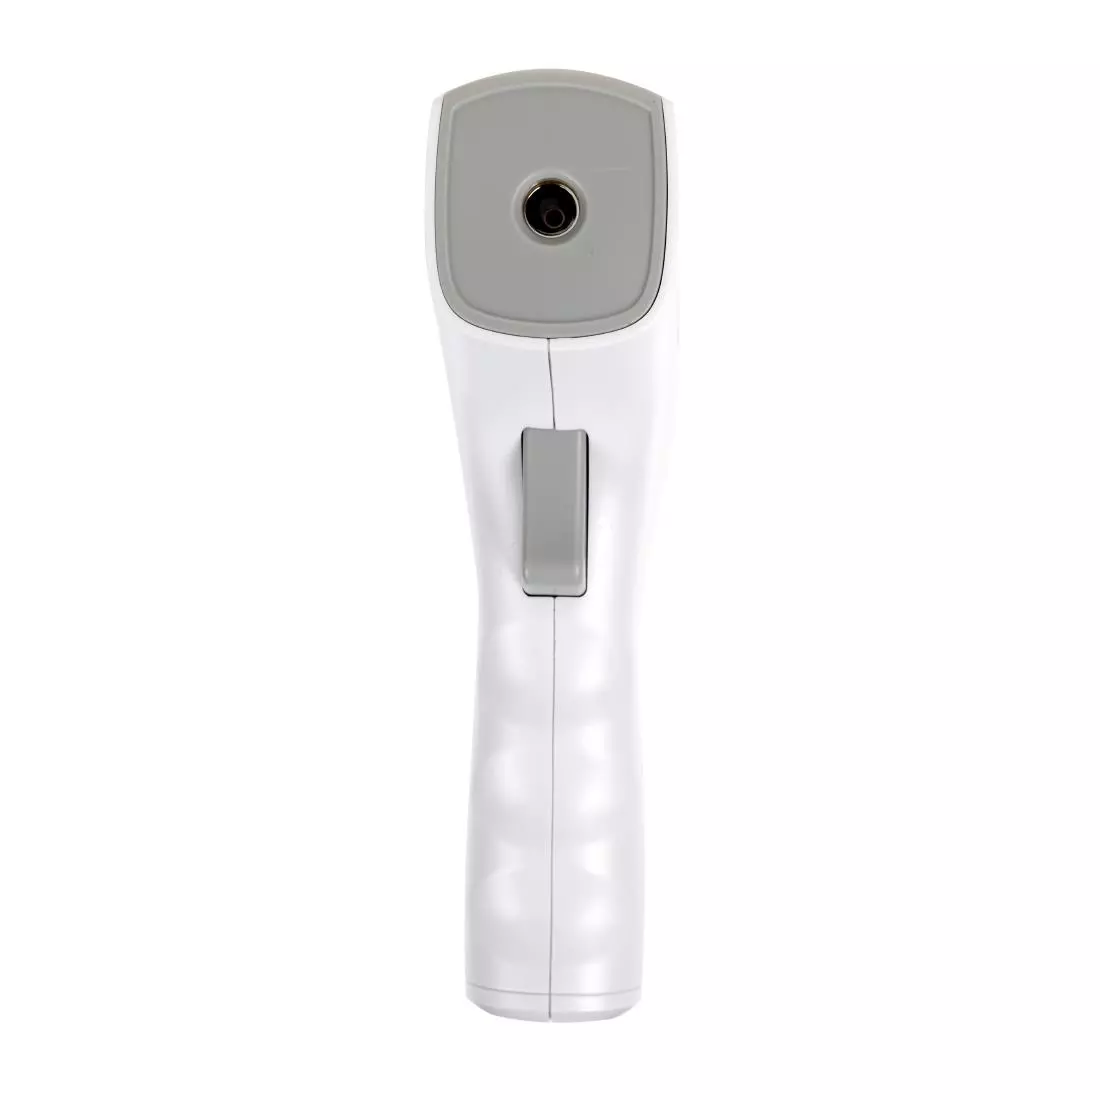 Een Marsden FT3010 contactloze infrarood thermometer koop je bij ShopXPress